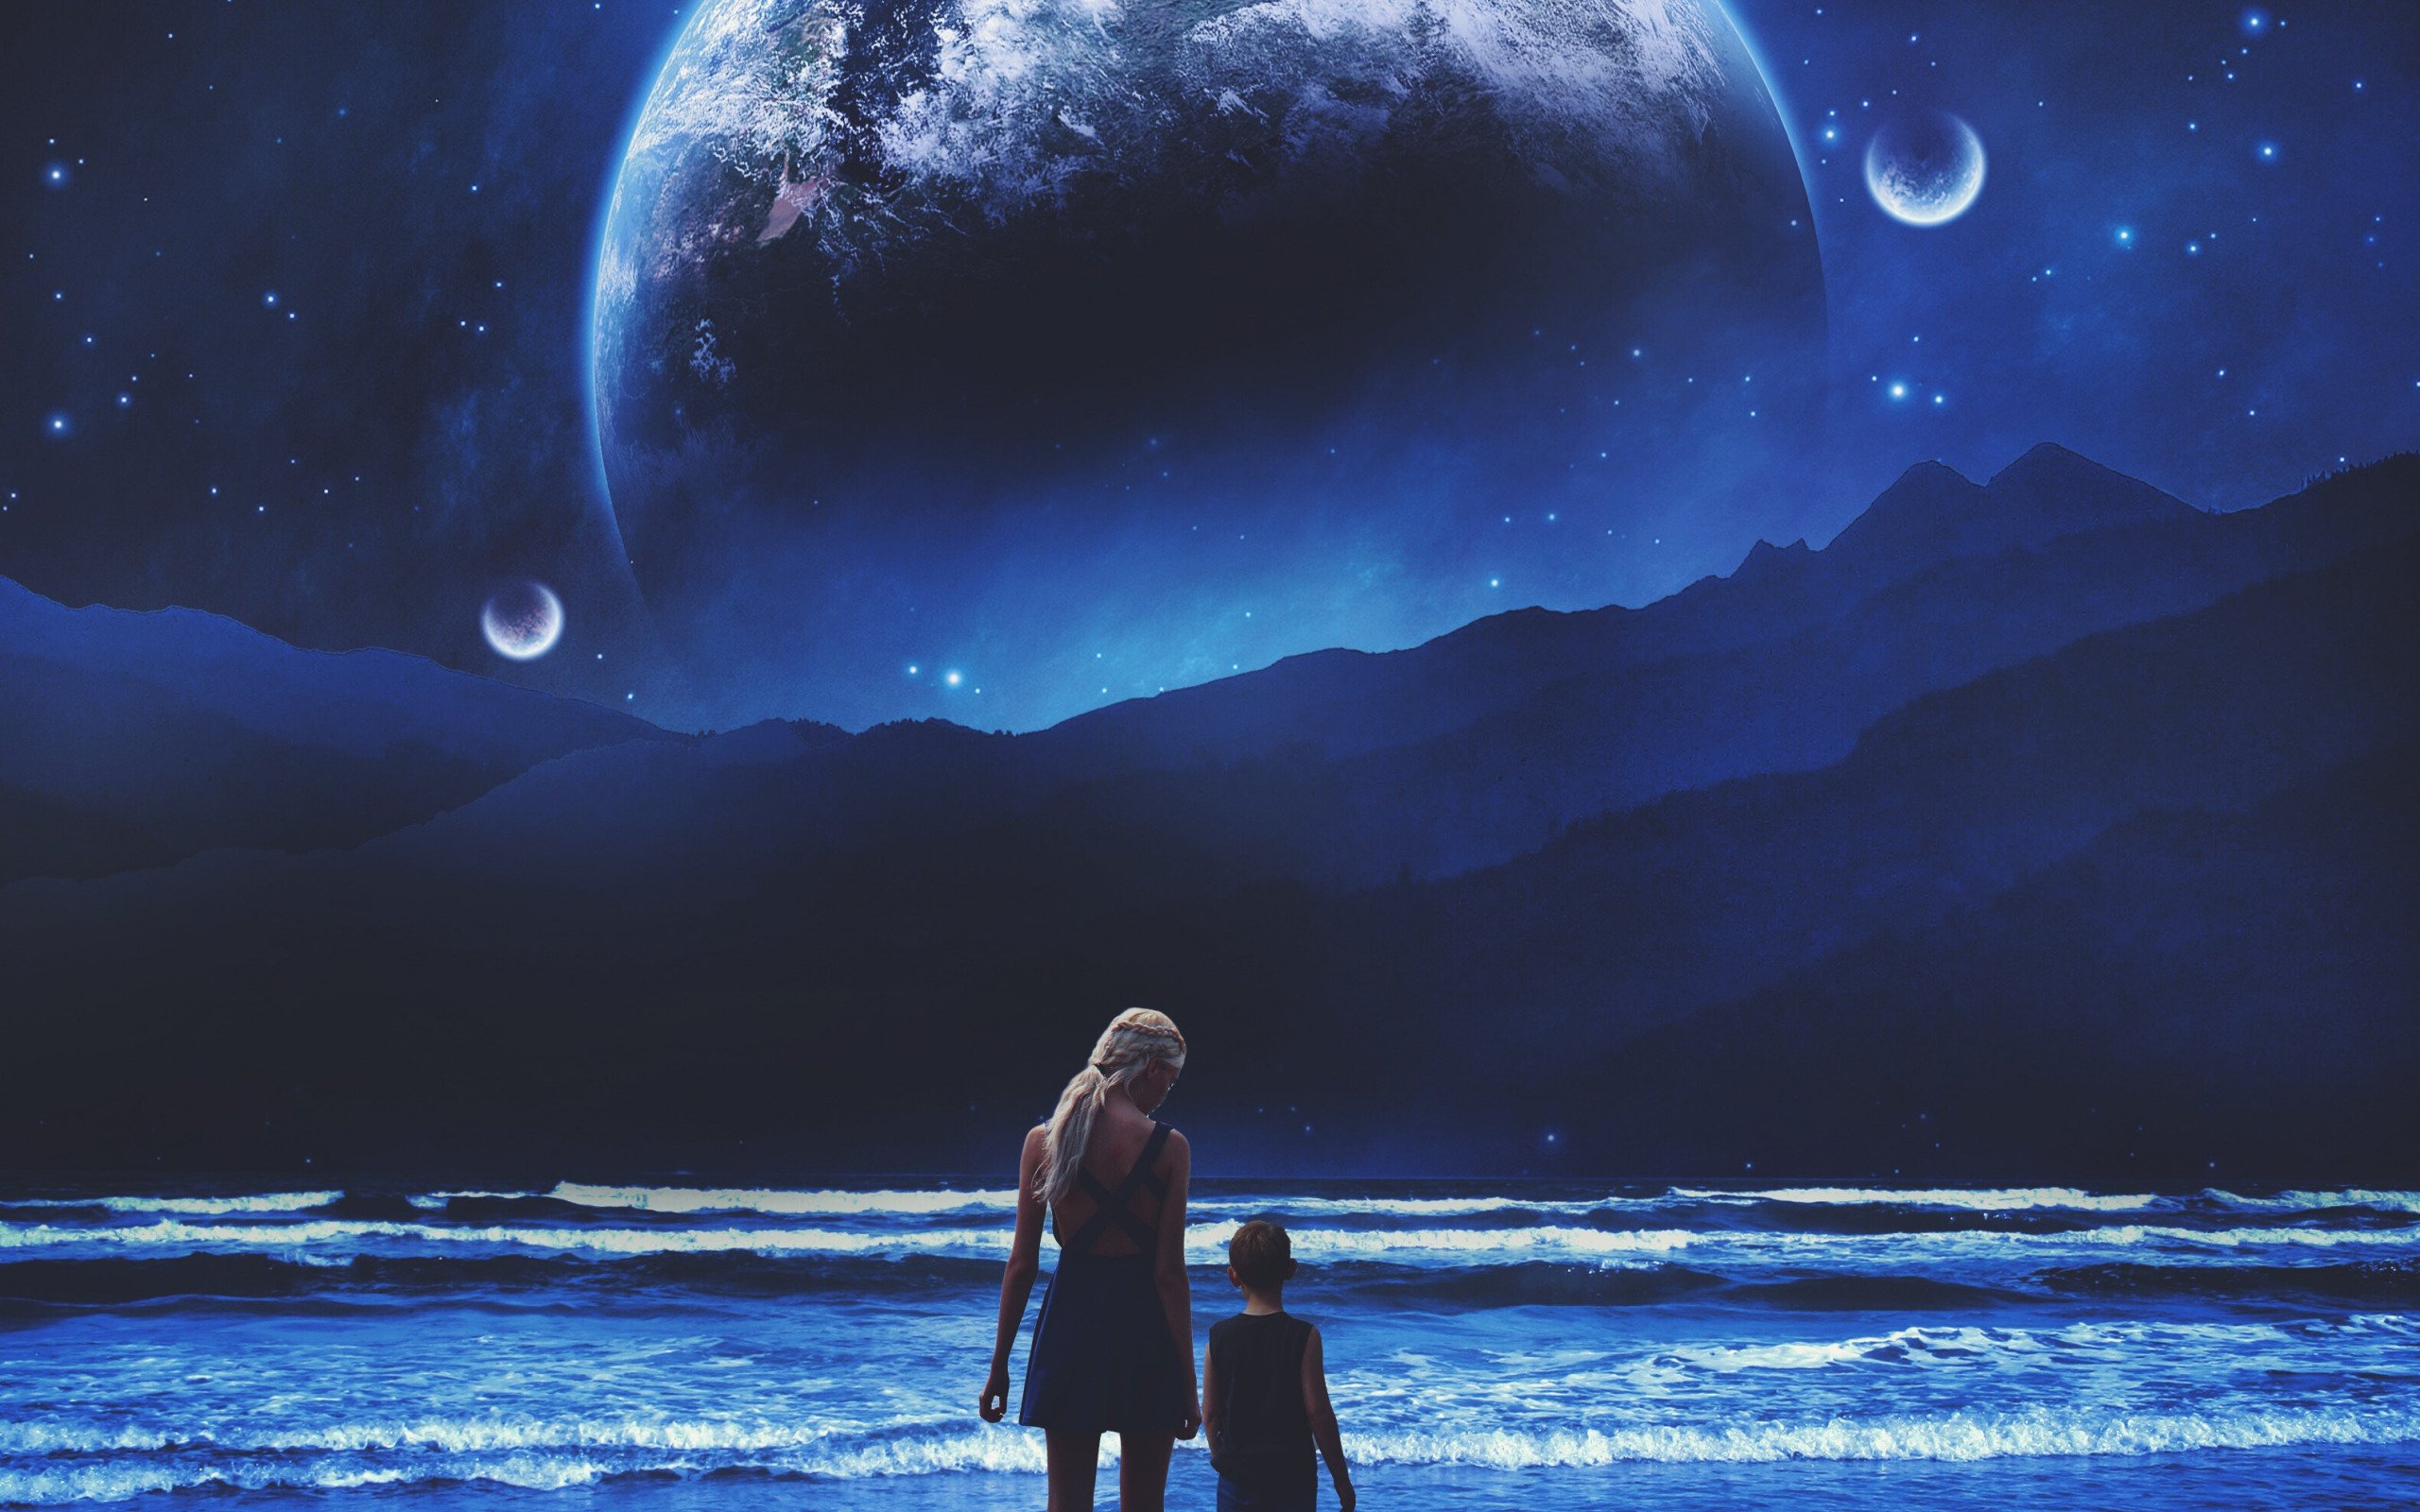 Other the moon. Космос фэнтези. Космический пейзаж. Звездное небо с луной. Фантастическое ночное небо и девушка.